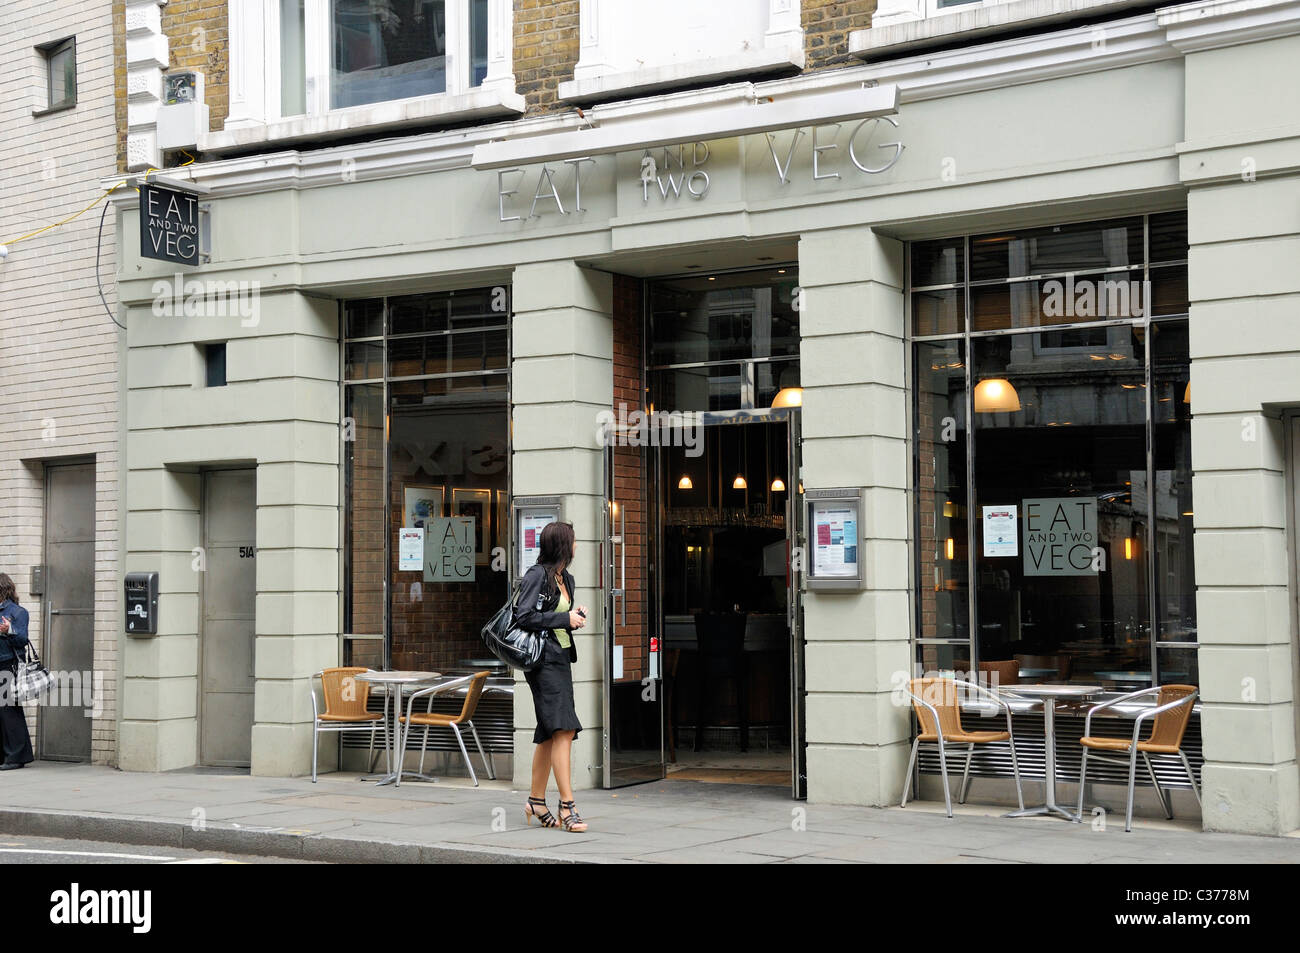 Lady auf der Suche in Essen und zwei Gemüse vegetarisches Restaurant Marylebone High Street London England UK Stockfoto